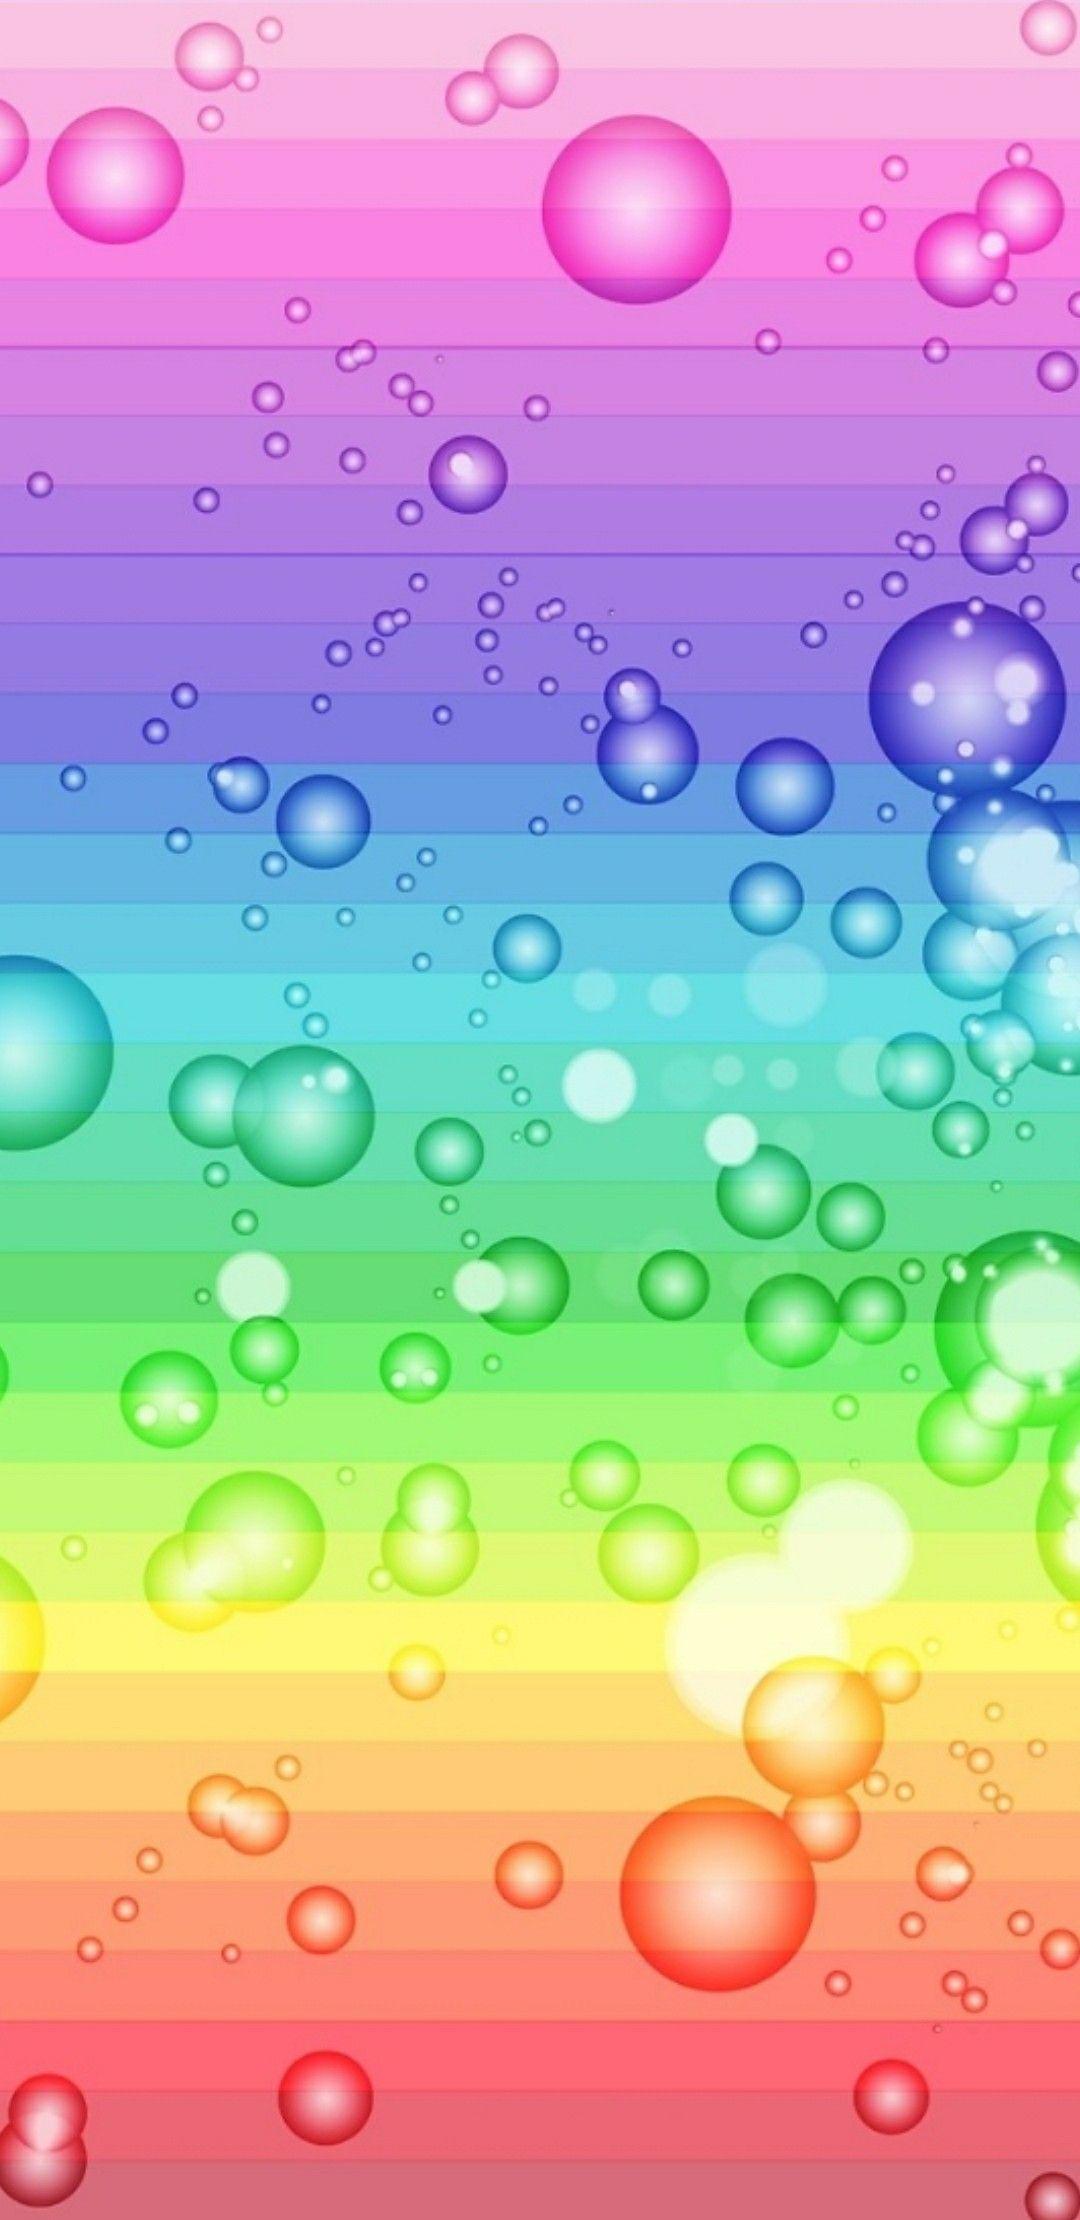 Rainbow Stripes and Bubbles Wallpaper. Bubbles wallpaper